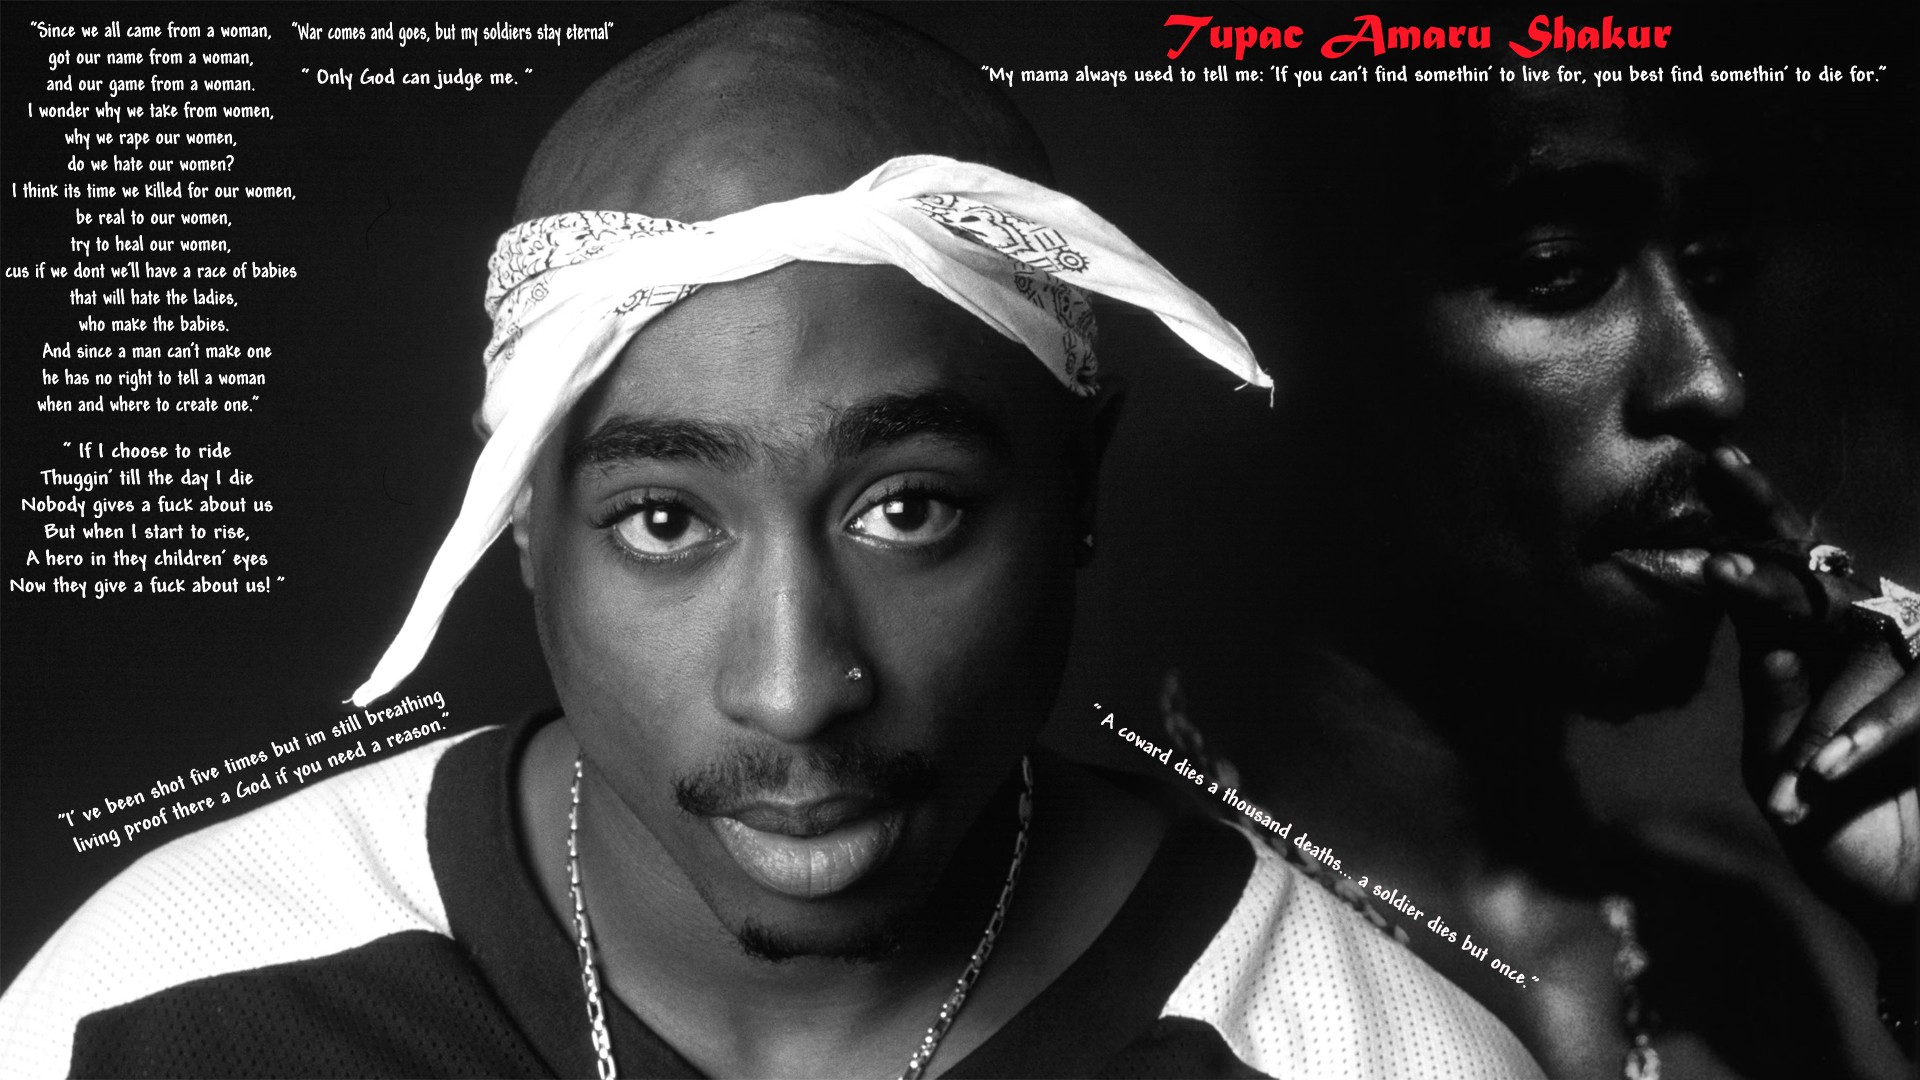 Tupac Shakur 2pac Rapper 1920x1080